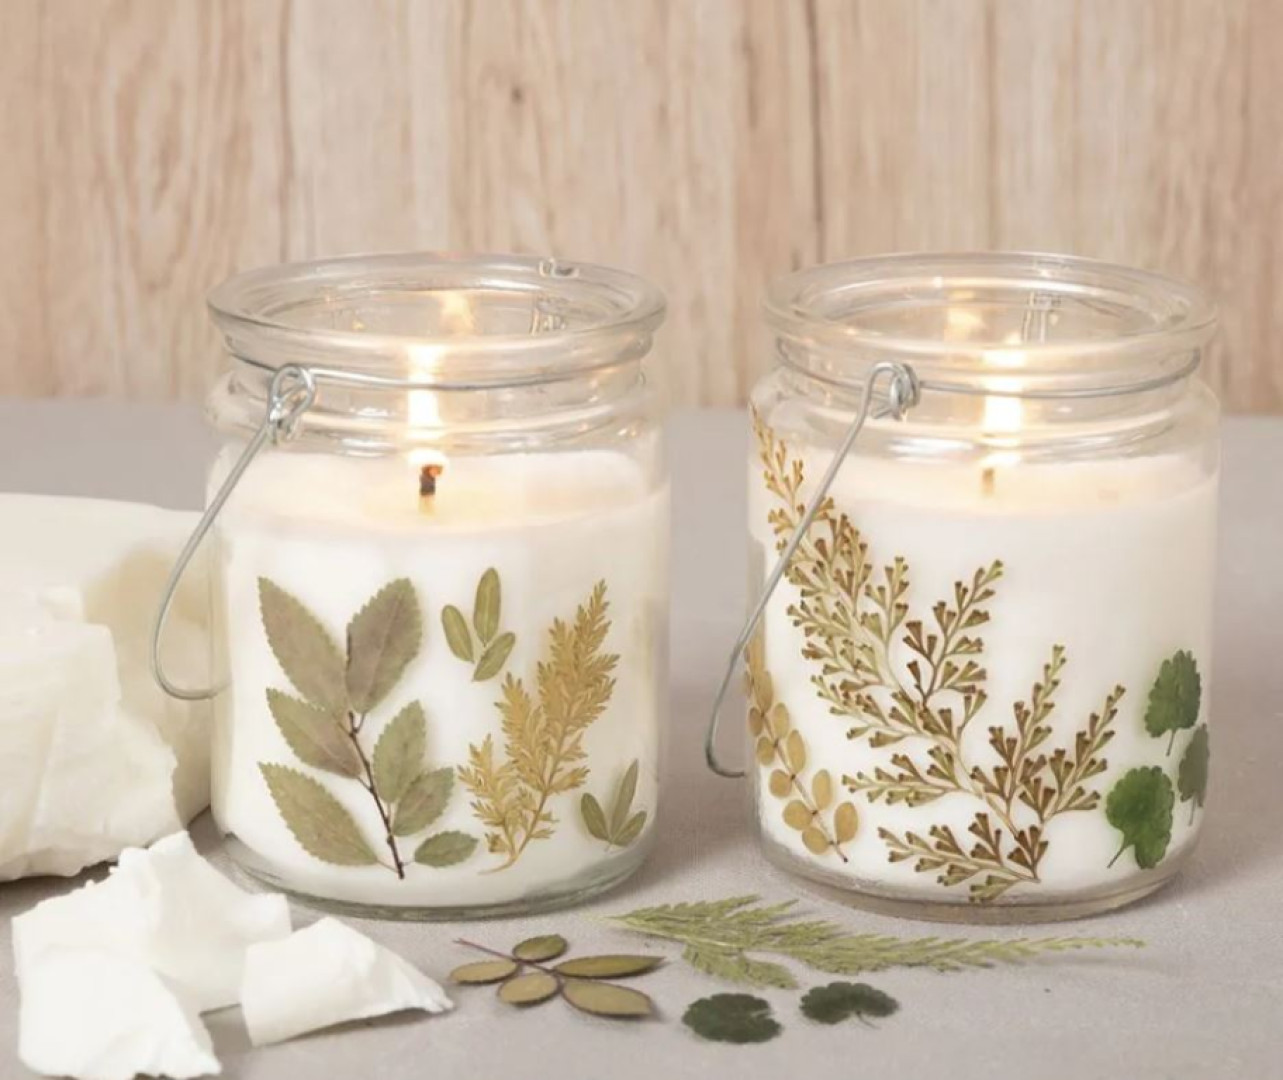 Vyrob si - dekoratívne sviečky s rastlinkami